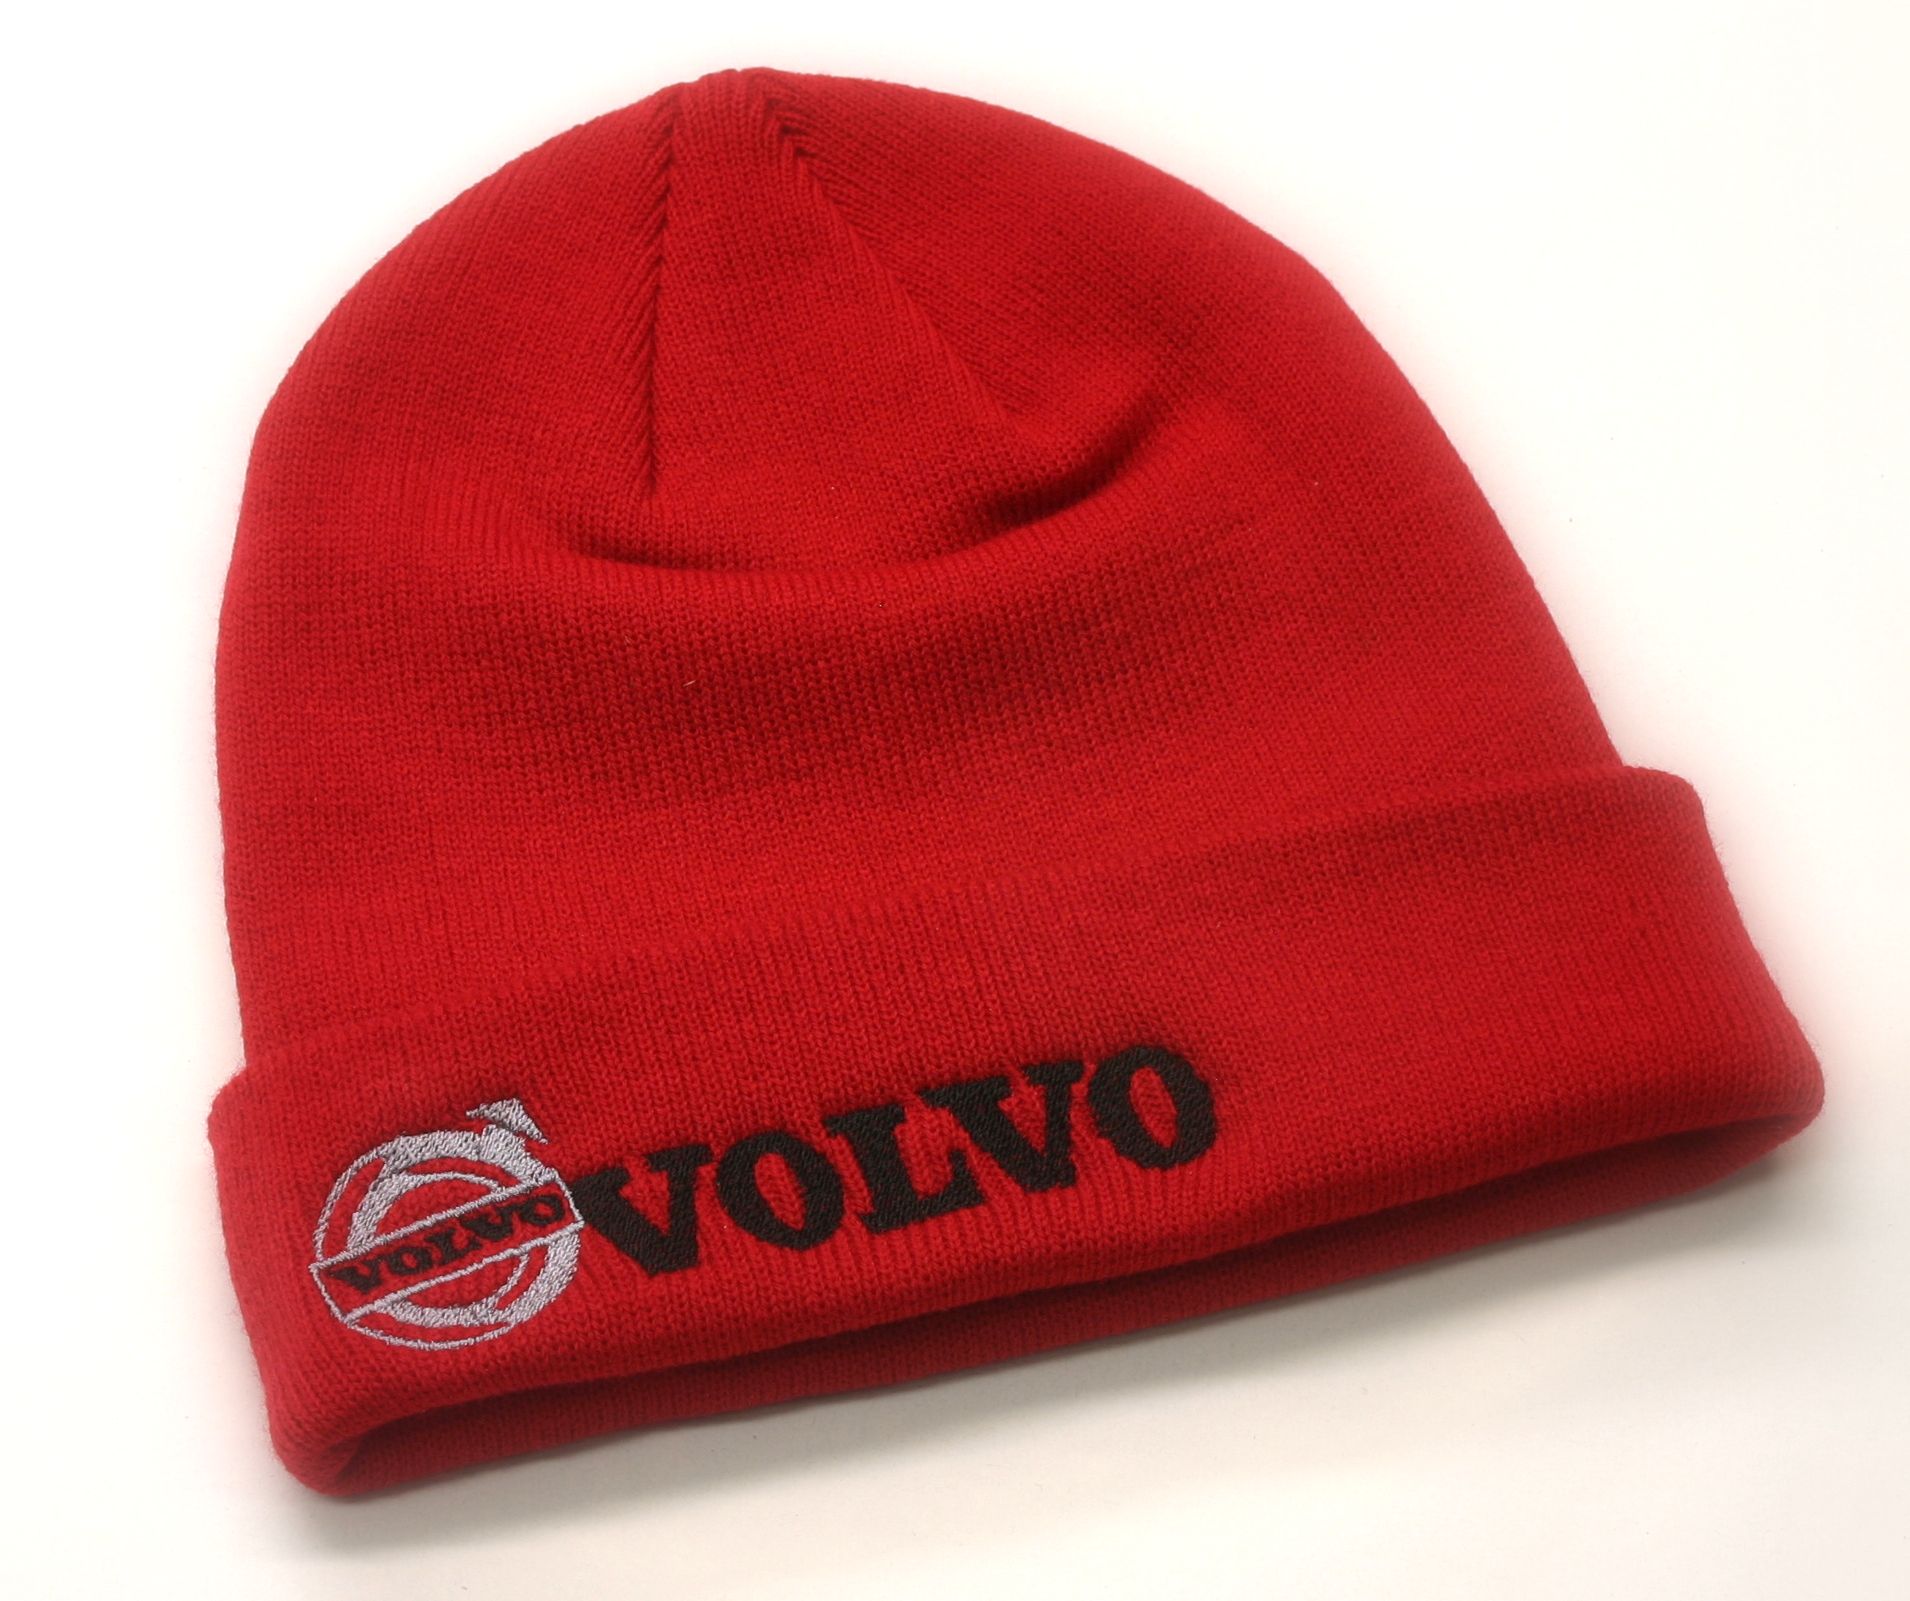 Truck zimní čepice Volvo v barvě červené